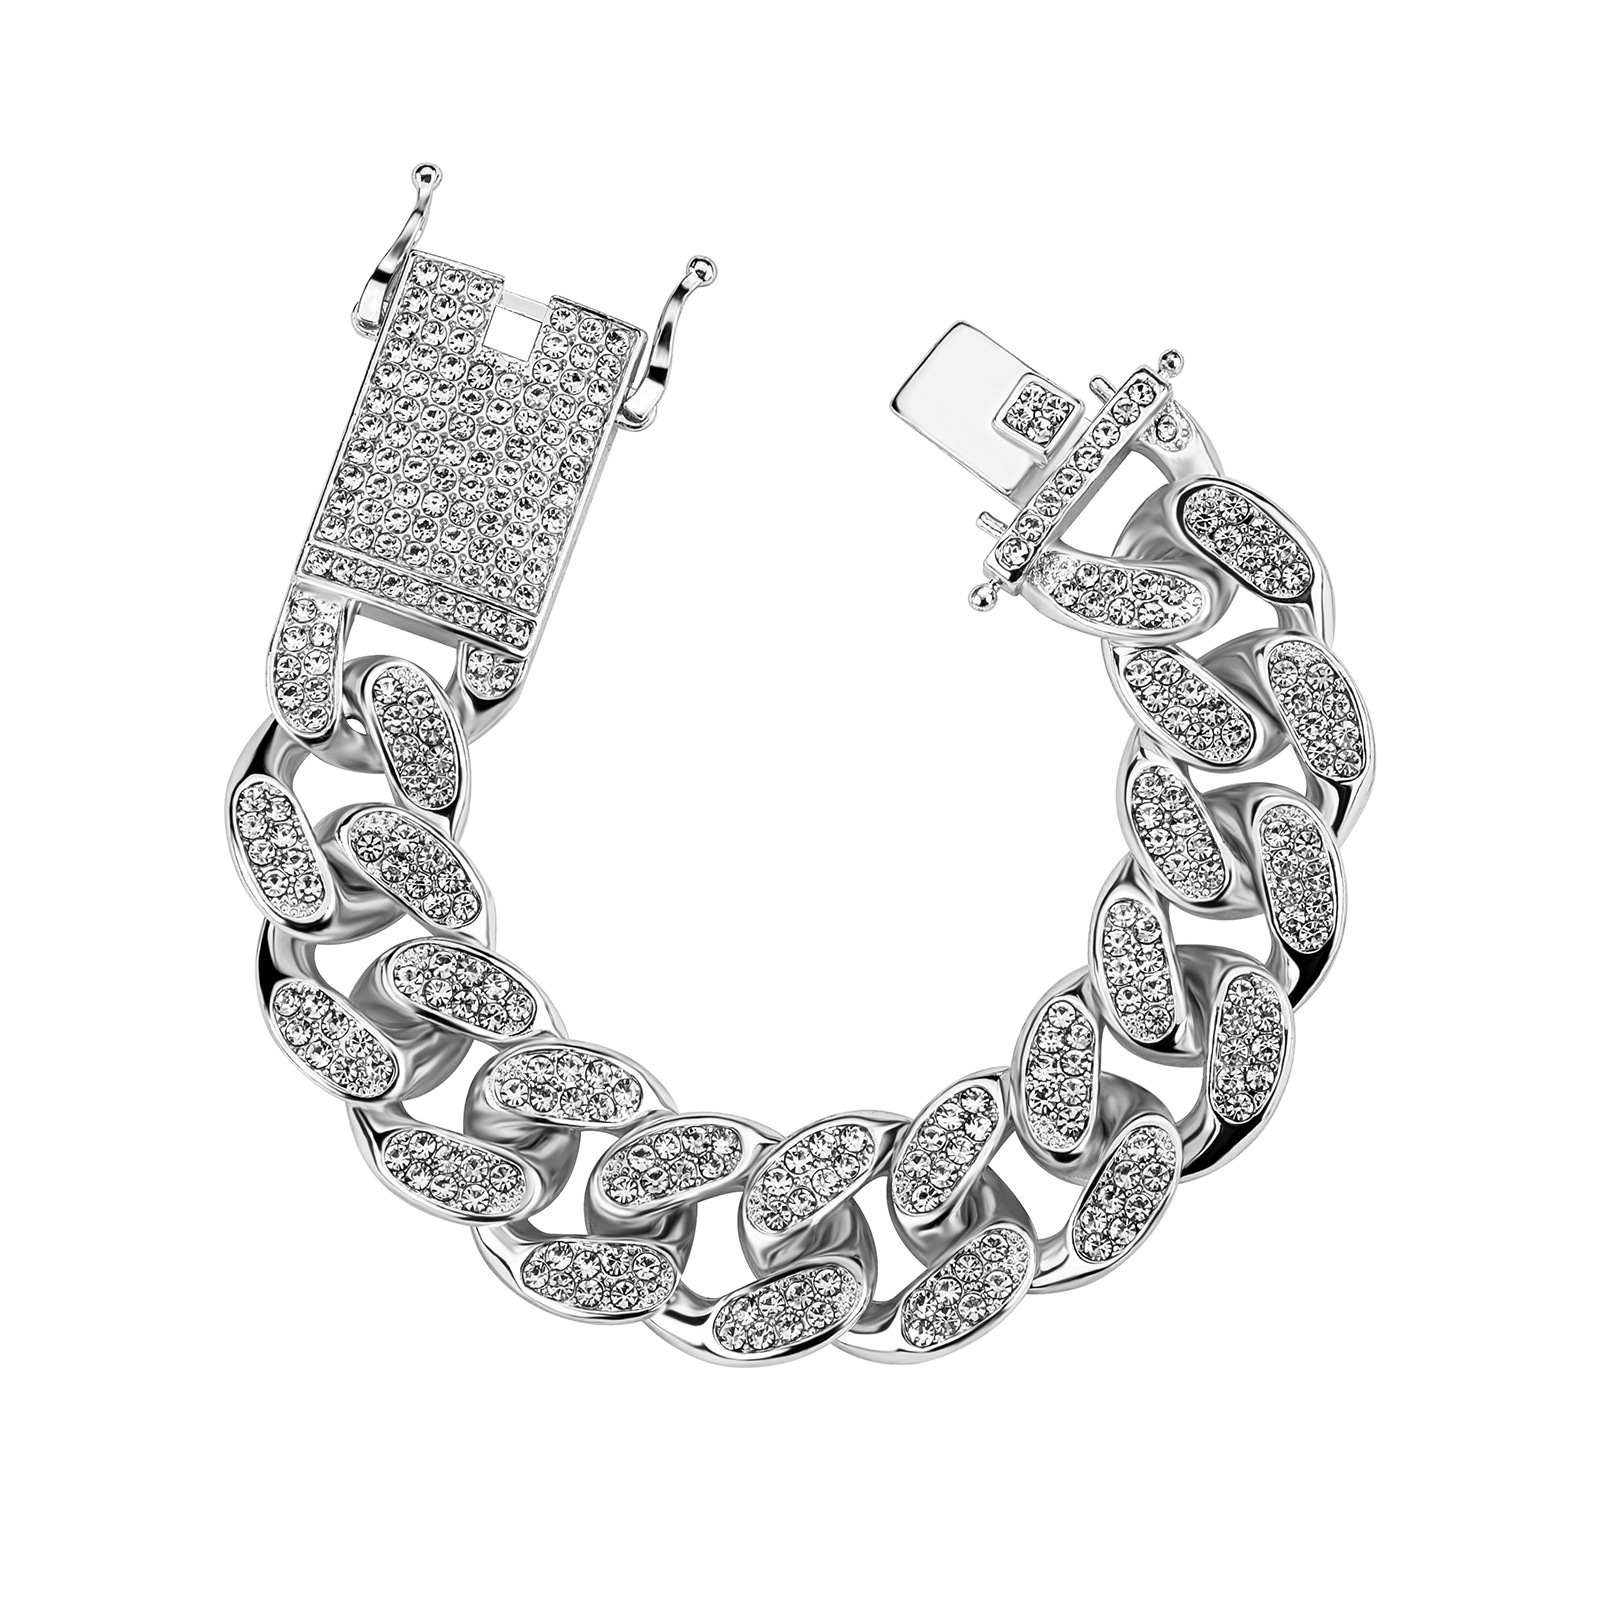 13:Bracelet silver 7 inch